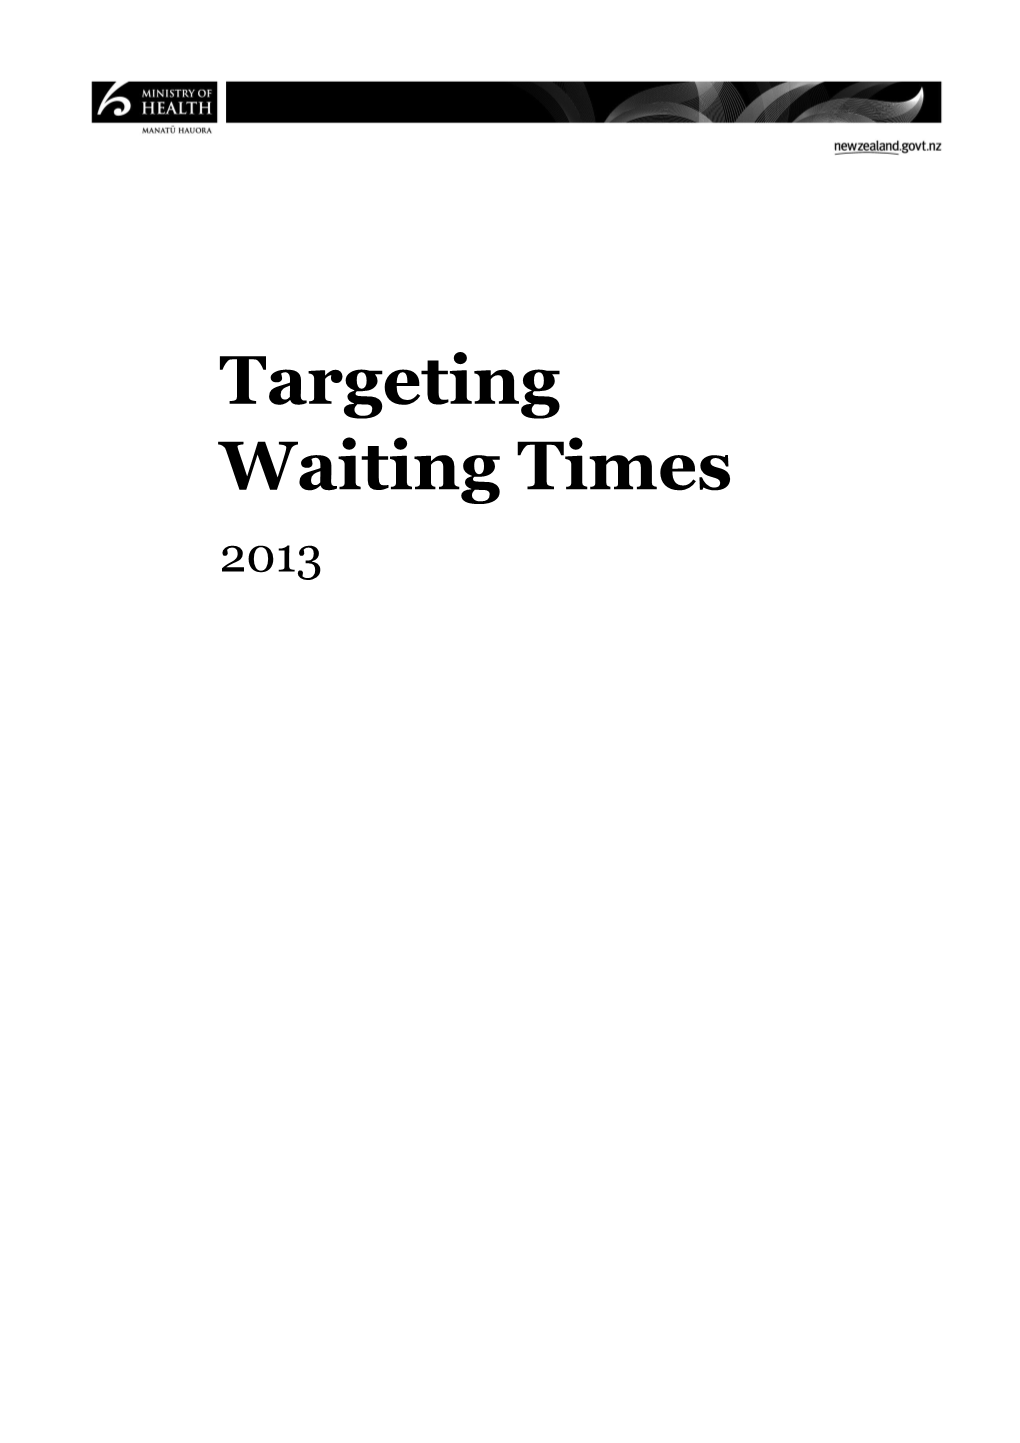 Targeting Waiting Times